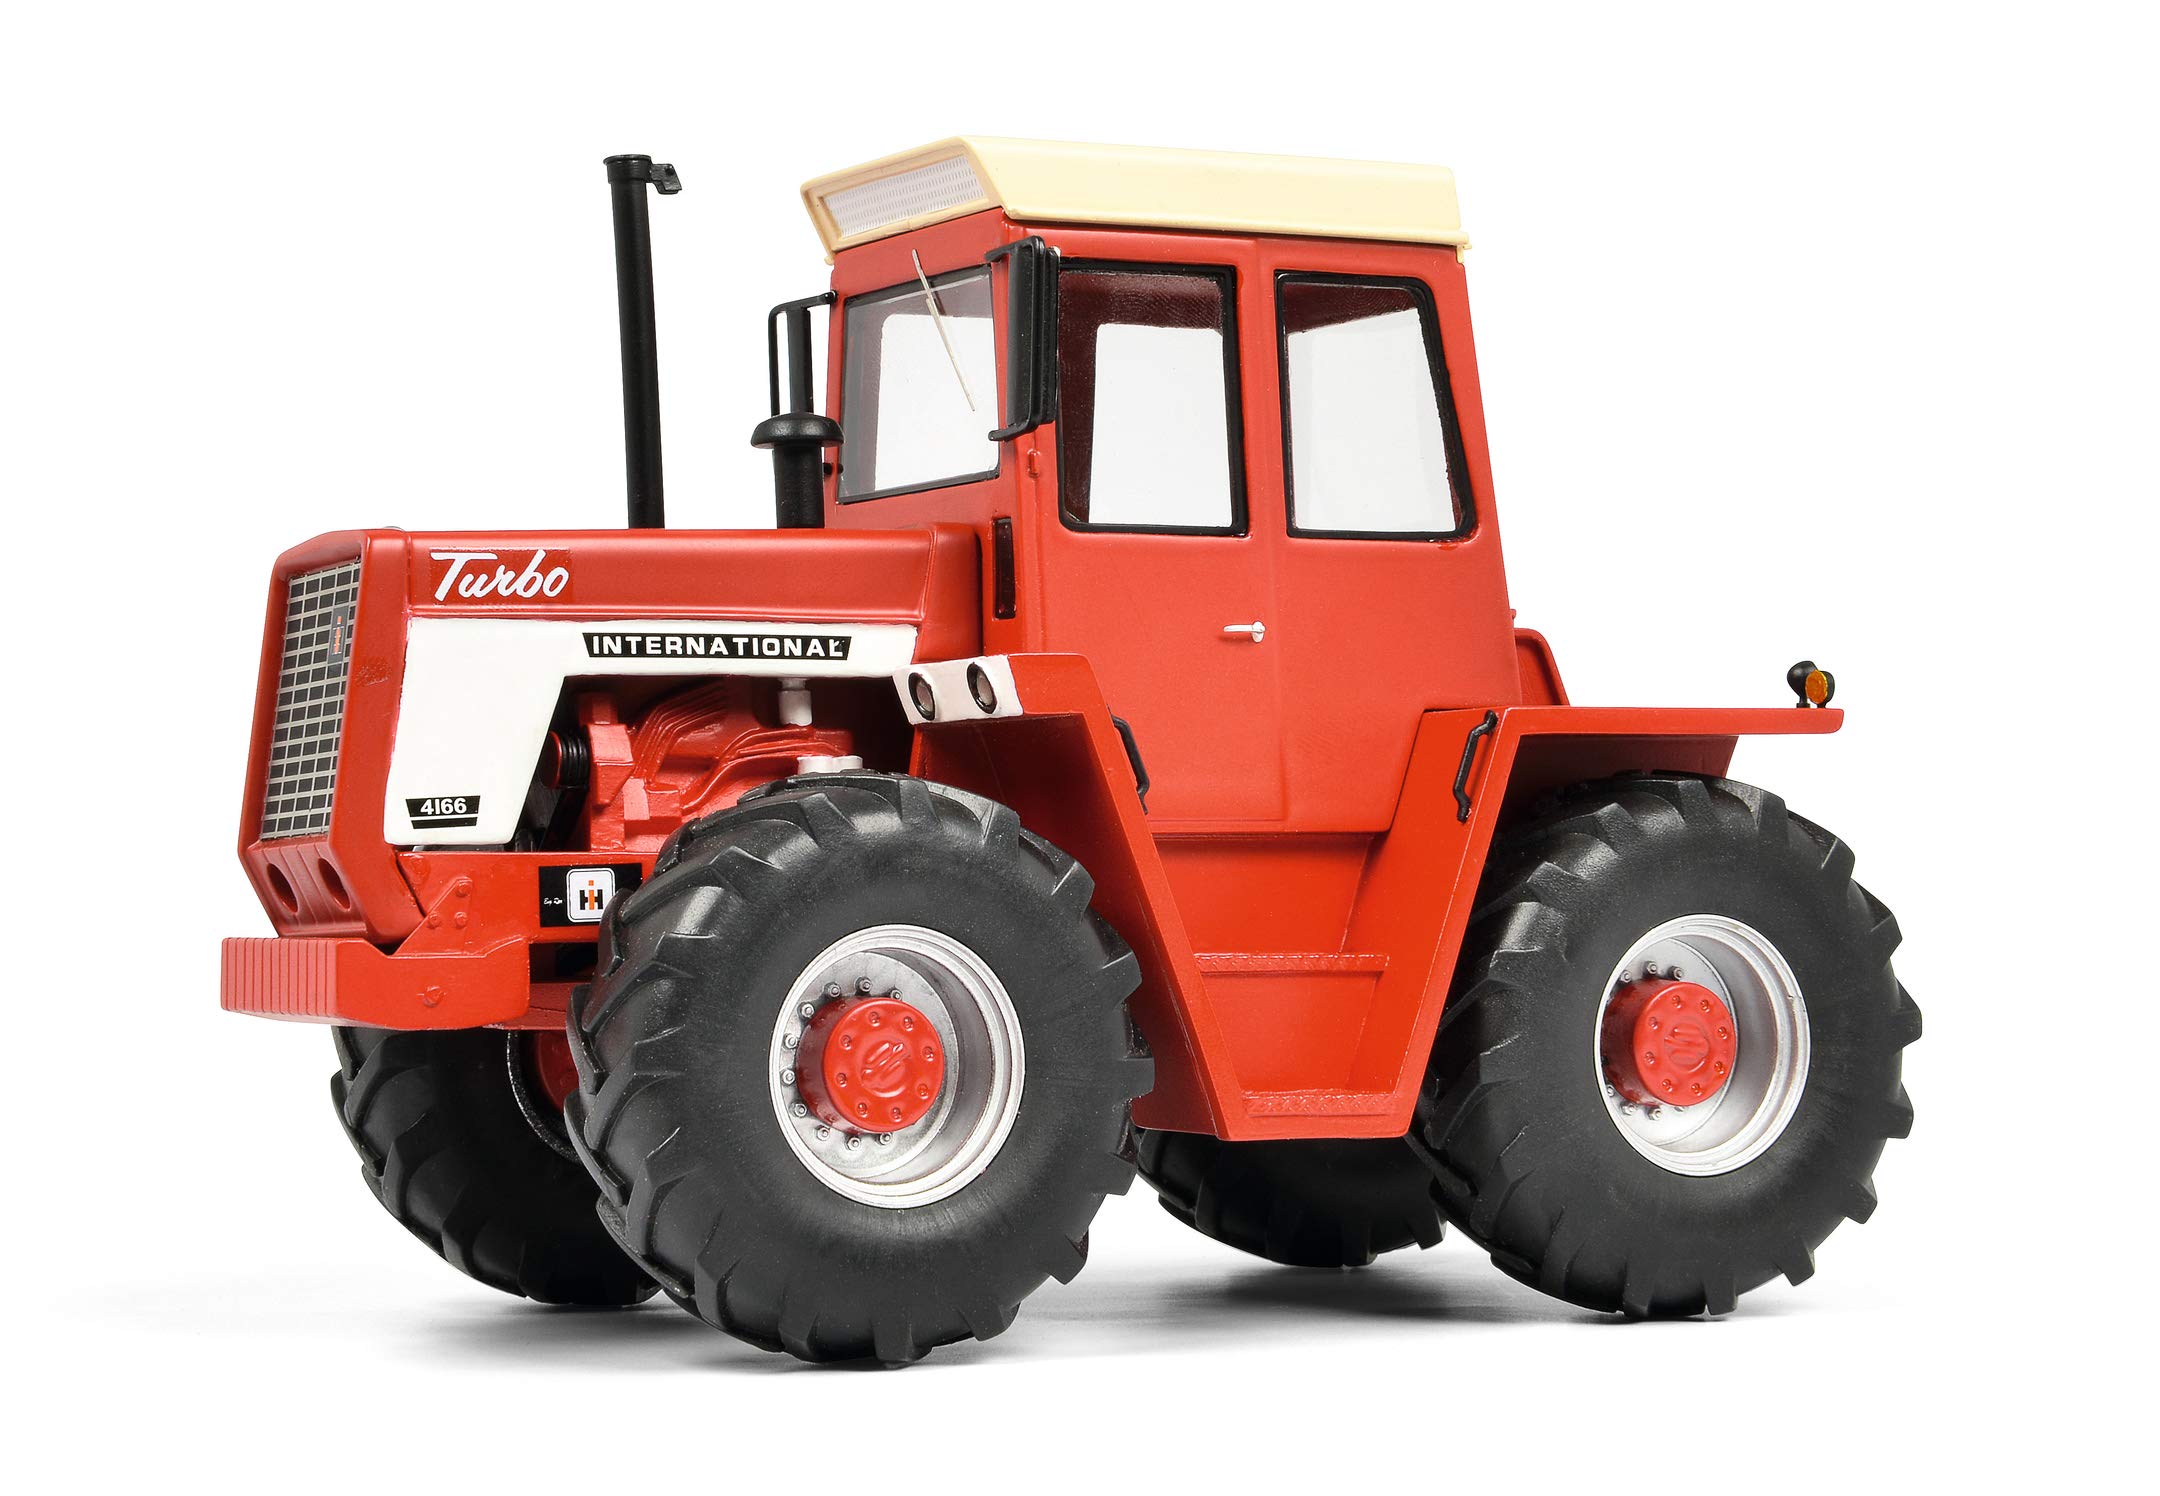 Schuco 450910900 rot Bulldog International 4166, Traktor, Modellauto, Maßstab 1:32, Limited Edition 1.500, Resin